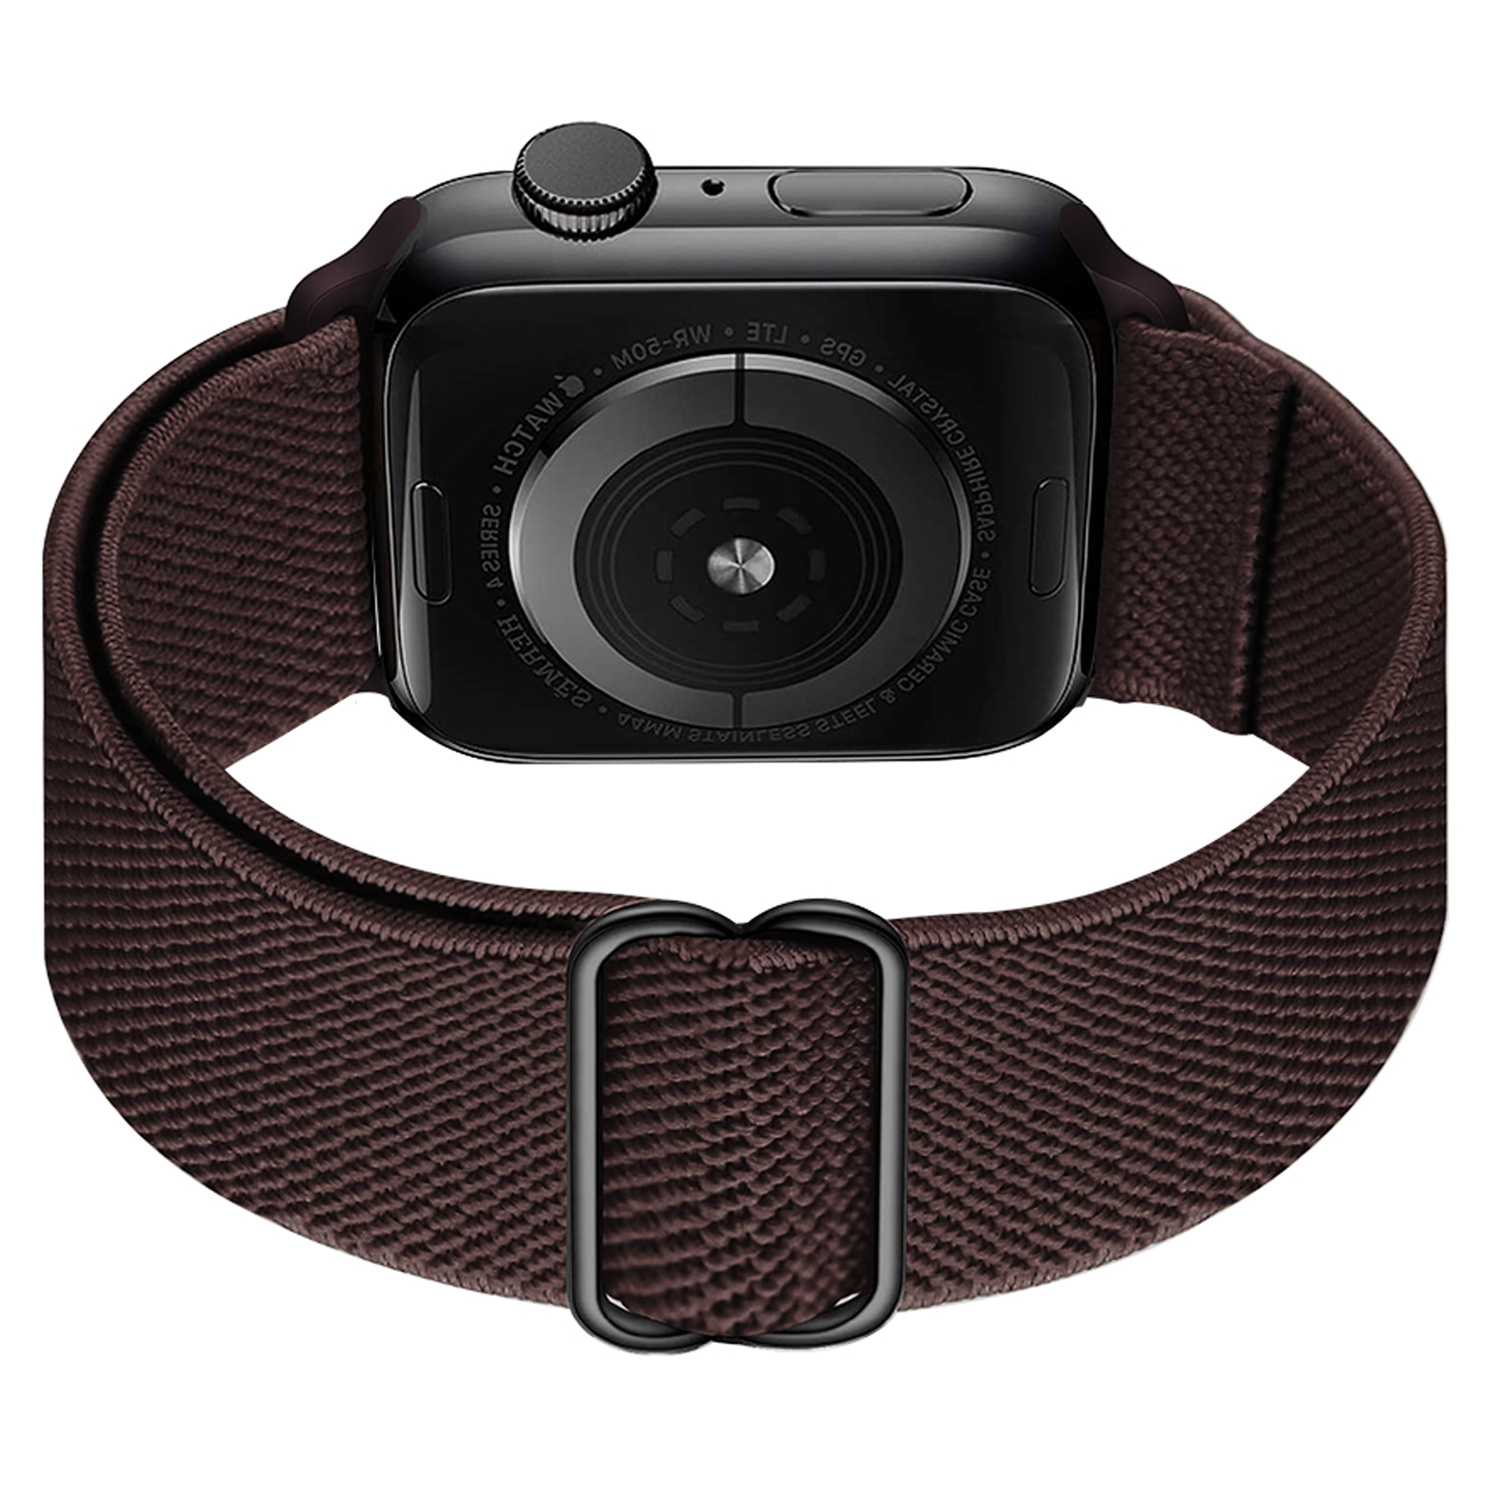 BASEY. Nylon Bandje Geschikt voor Apple Watch 1-8 / SE (38/40/41 mm) Bandje Stof - Horloge Band Verstelbare Gesp Polsband Geschikt voor Apple Watch 1-8 / SE (38/40/41 mm) - Bruin